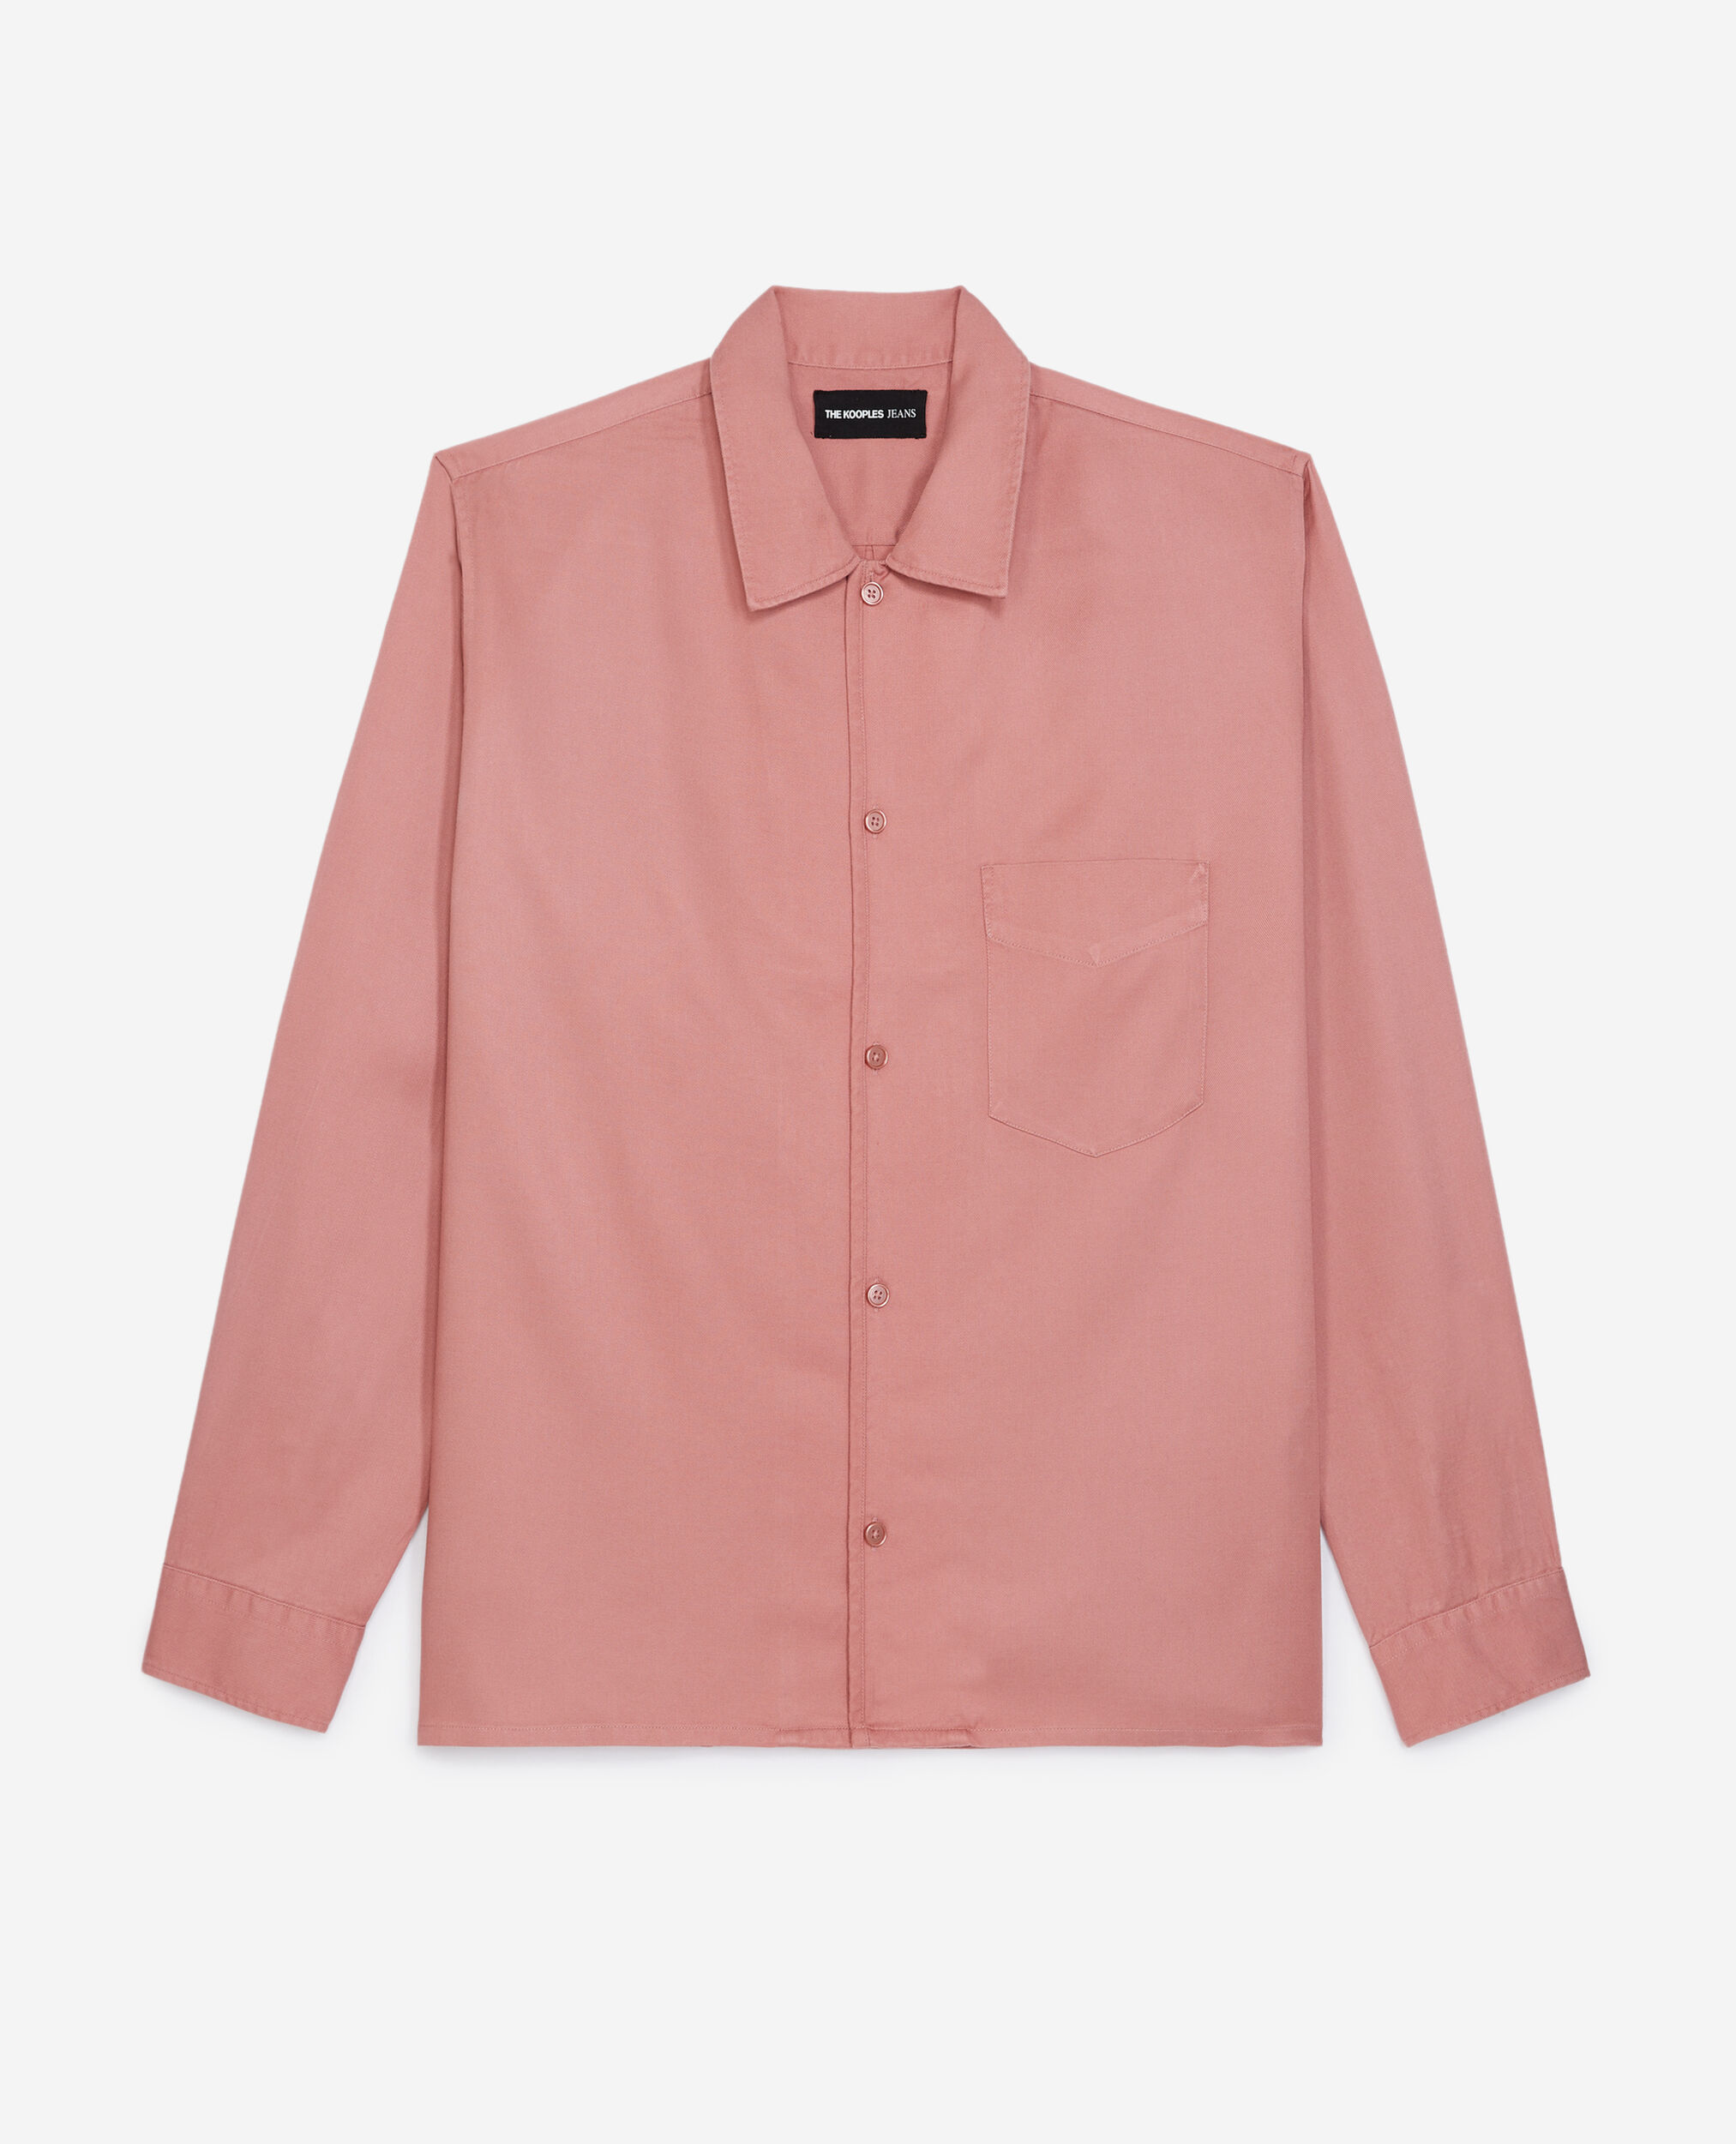 Camisa fluida rosa palo bolsillo, OLD PINK, hi-res image number null